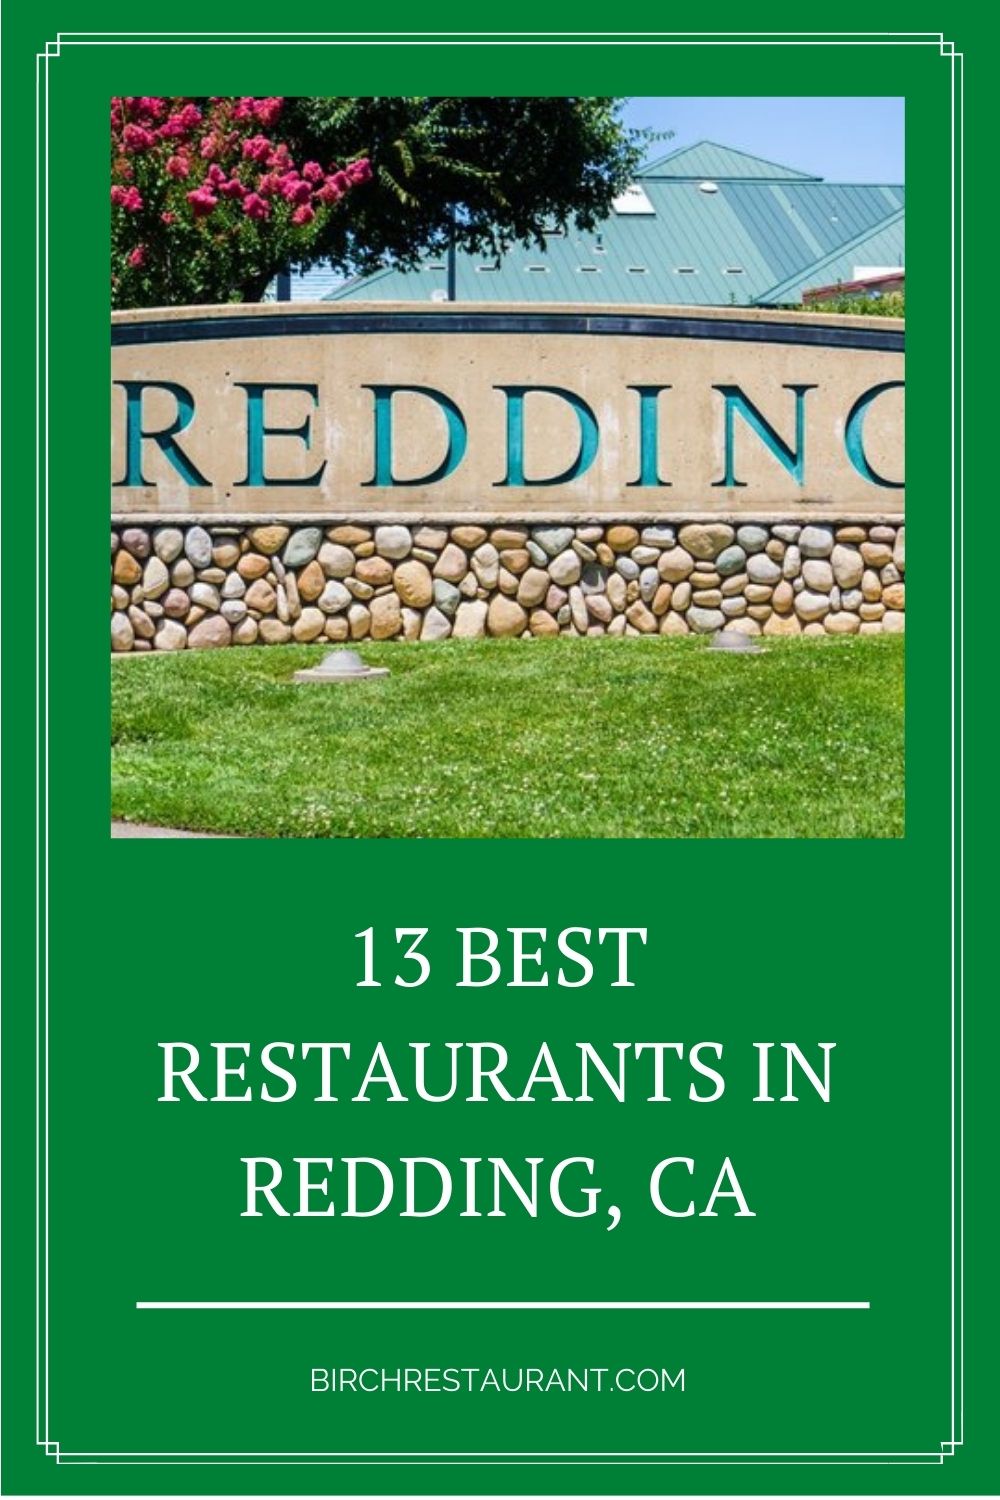 Best Restaurants in Redding